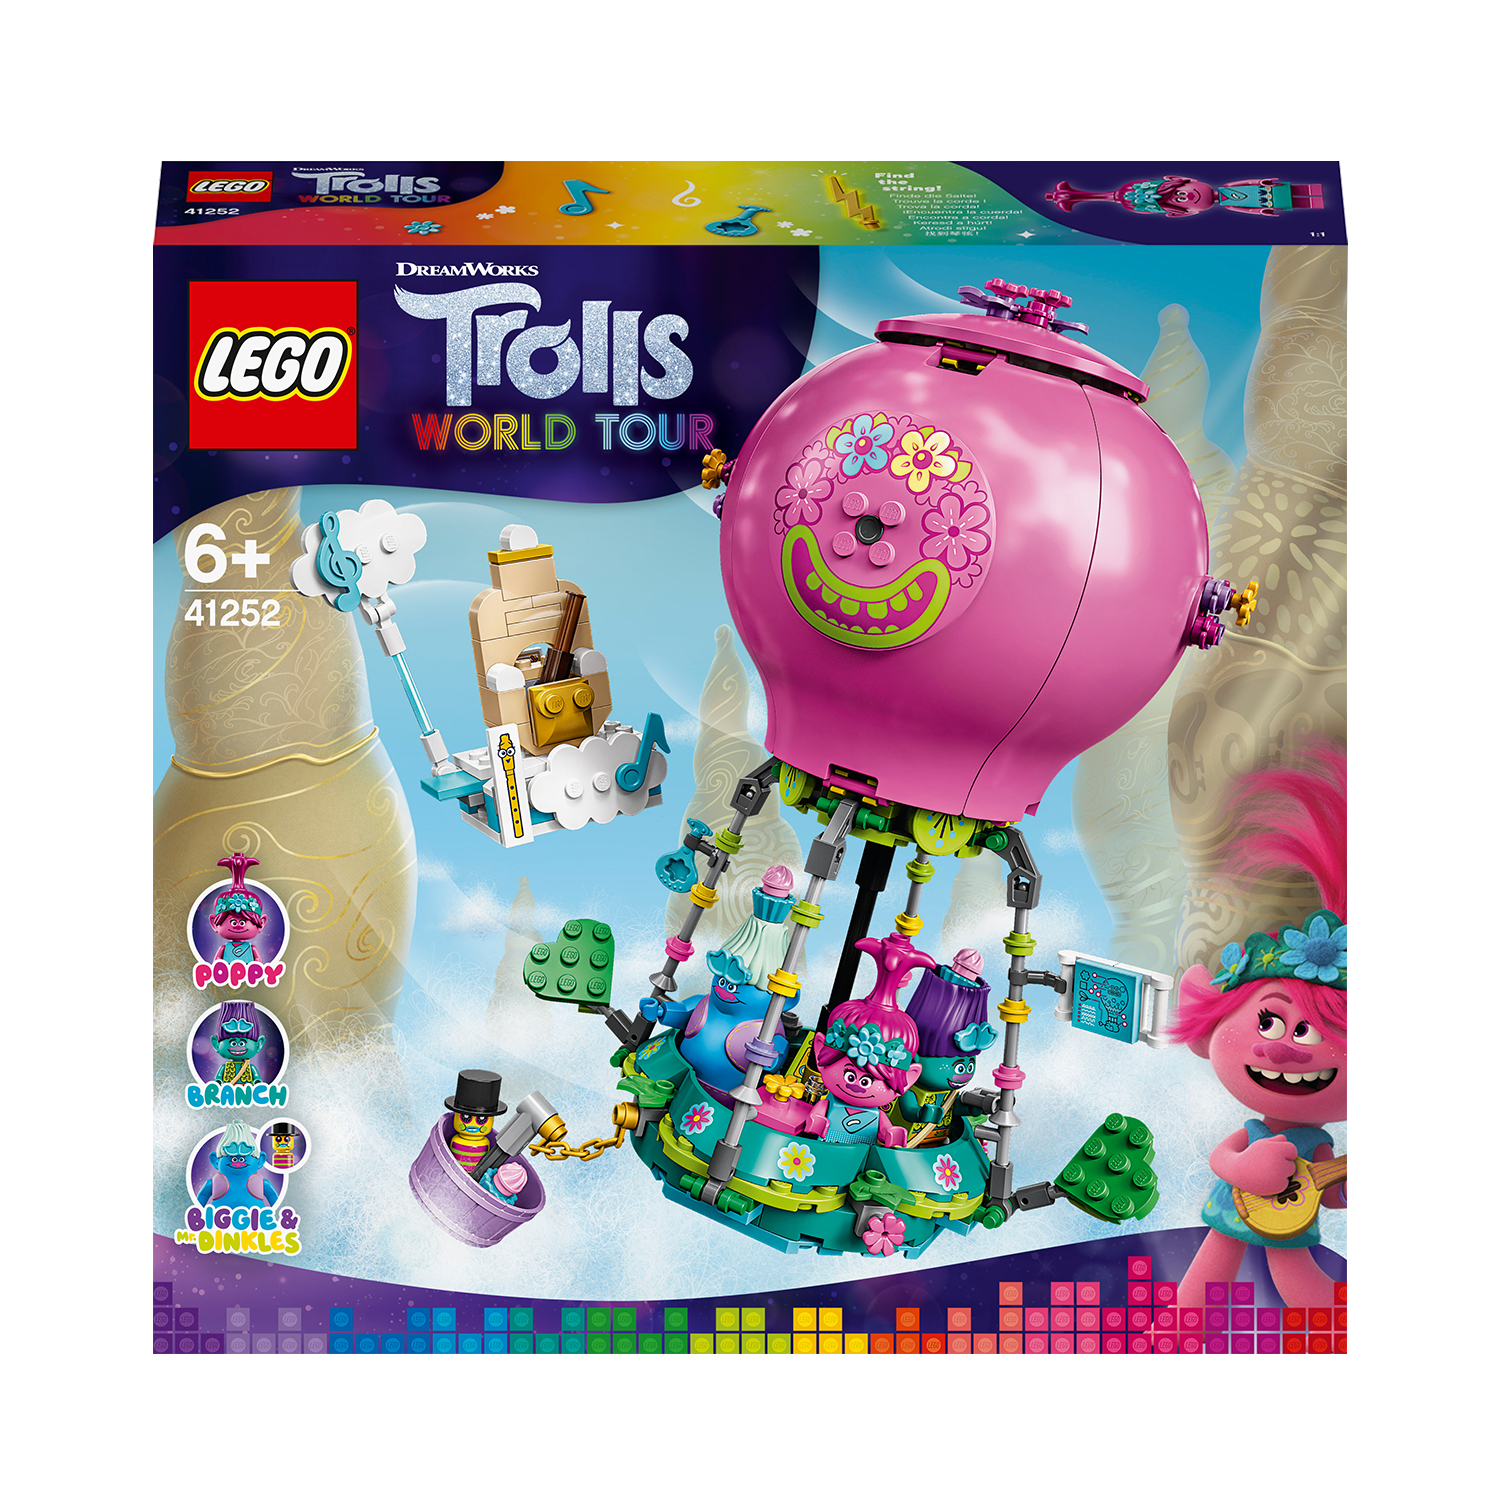 LEGO Trolls Poppys Heißluftballon